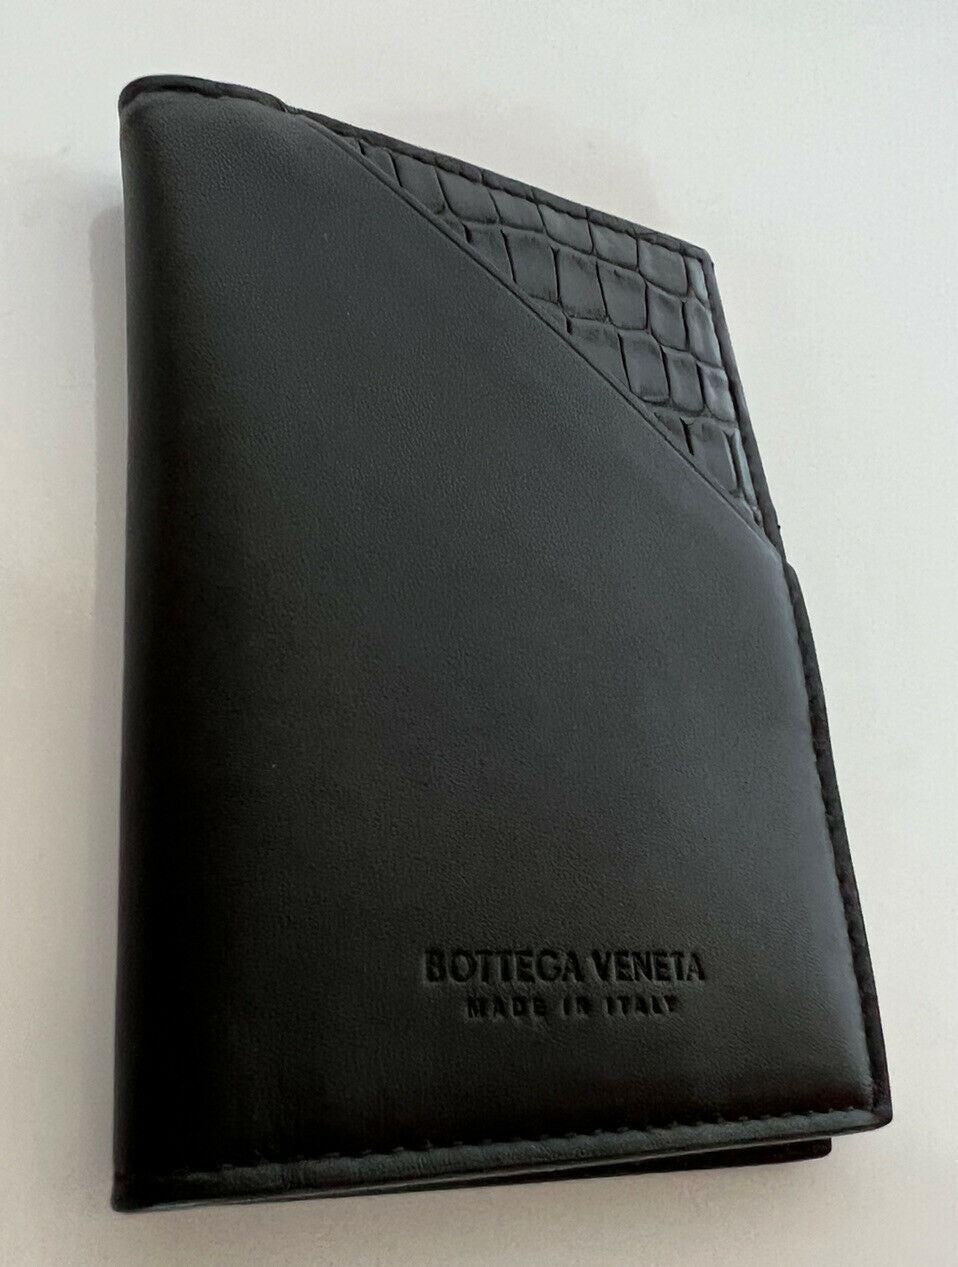 NWT $680 Мужской кошелек Bottega Veneta из кожи аллигатора, черный 619380 Италия 